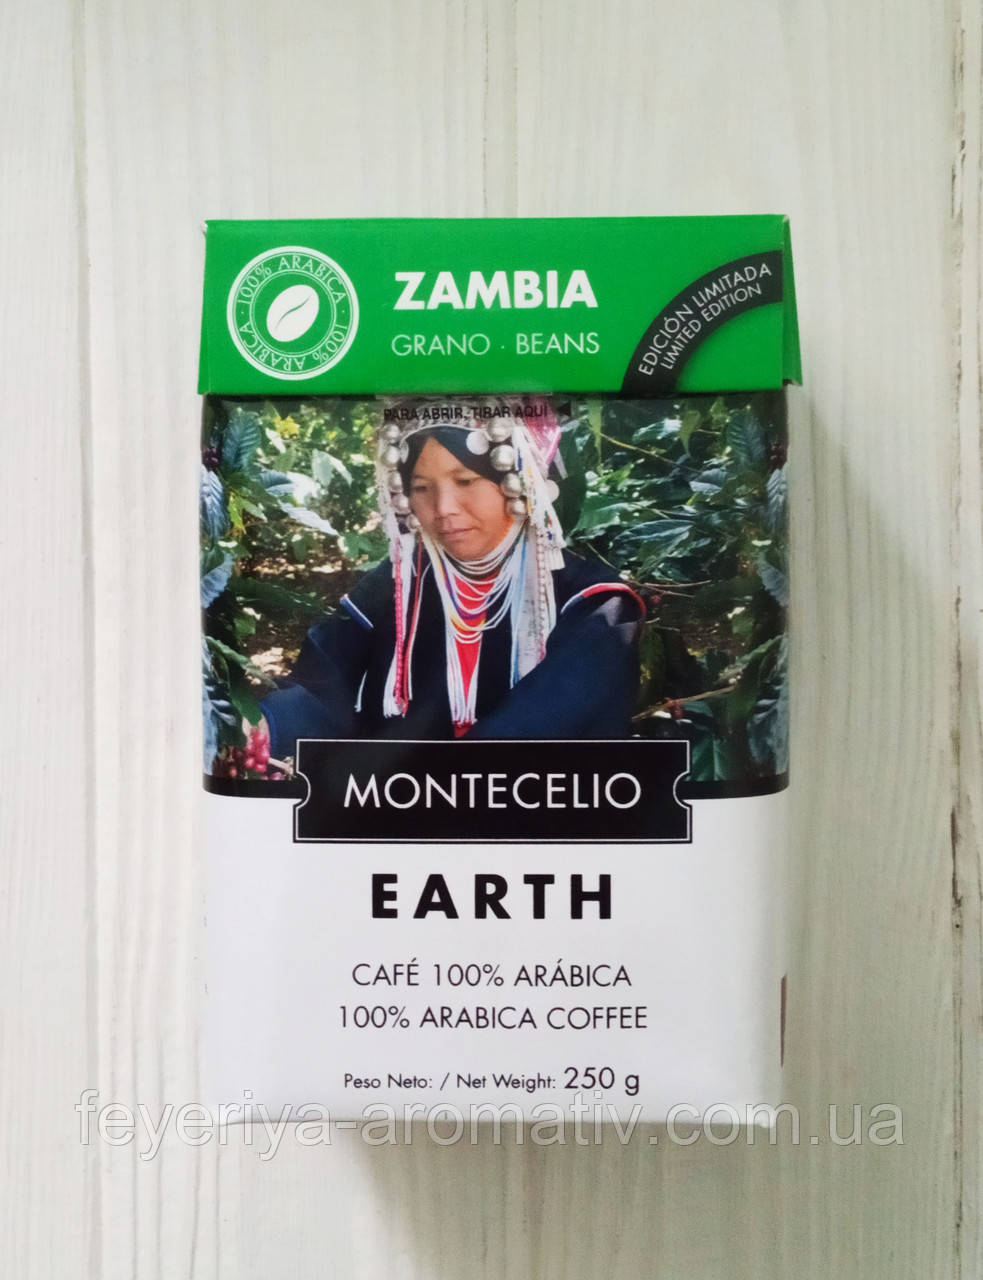 Кофе в зернах Zambia Montecelio Earth 250г (Испания)